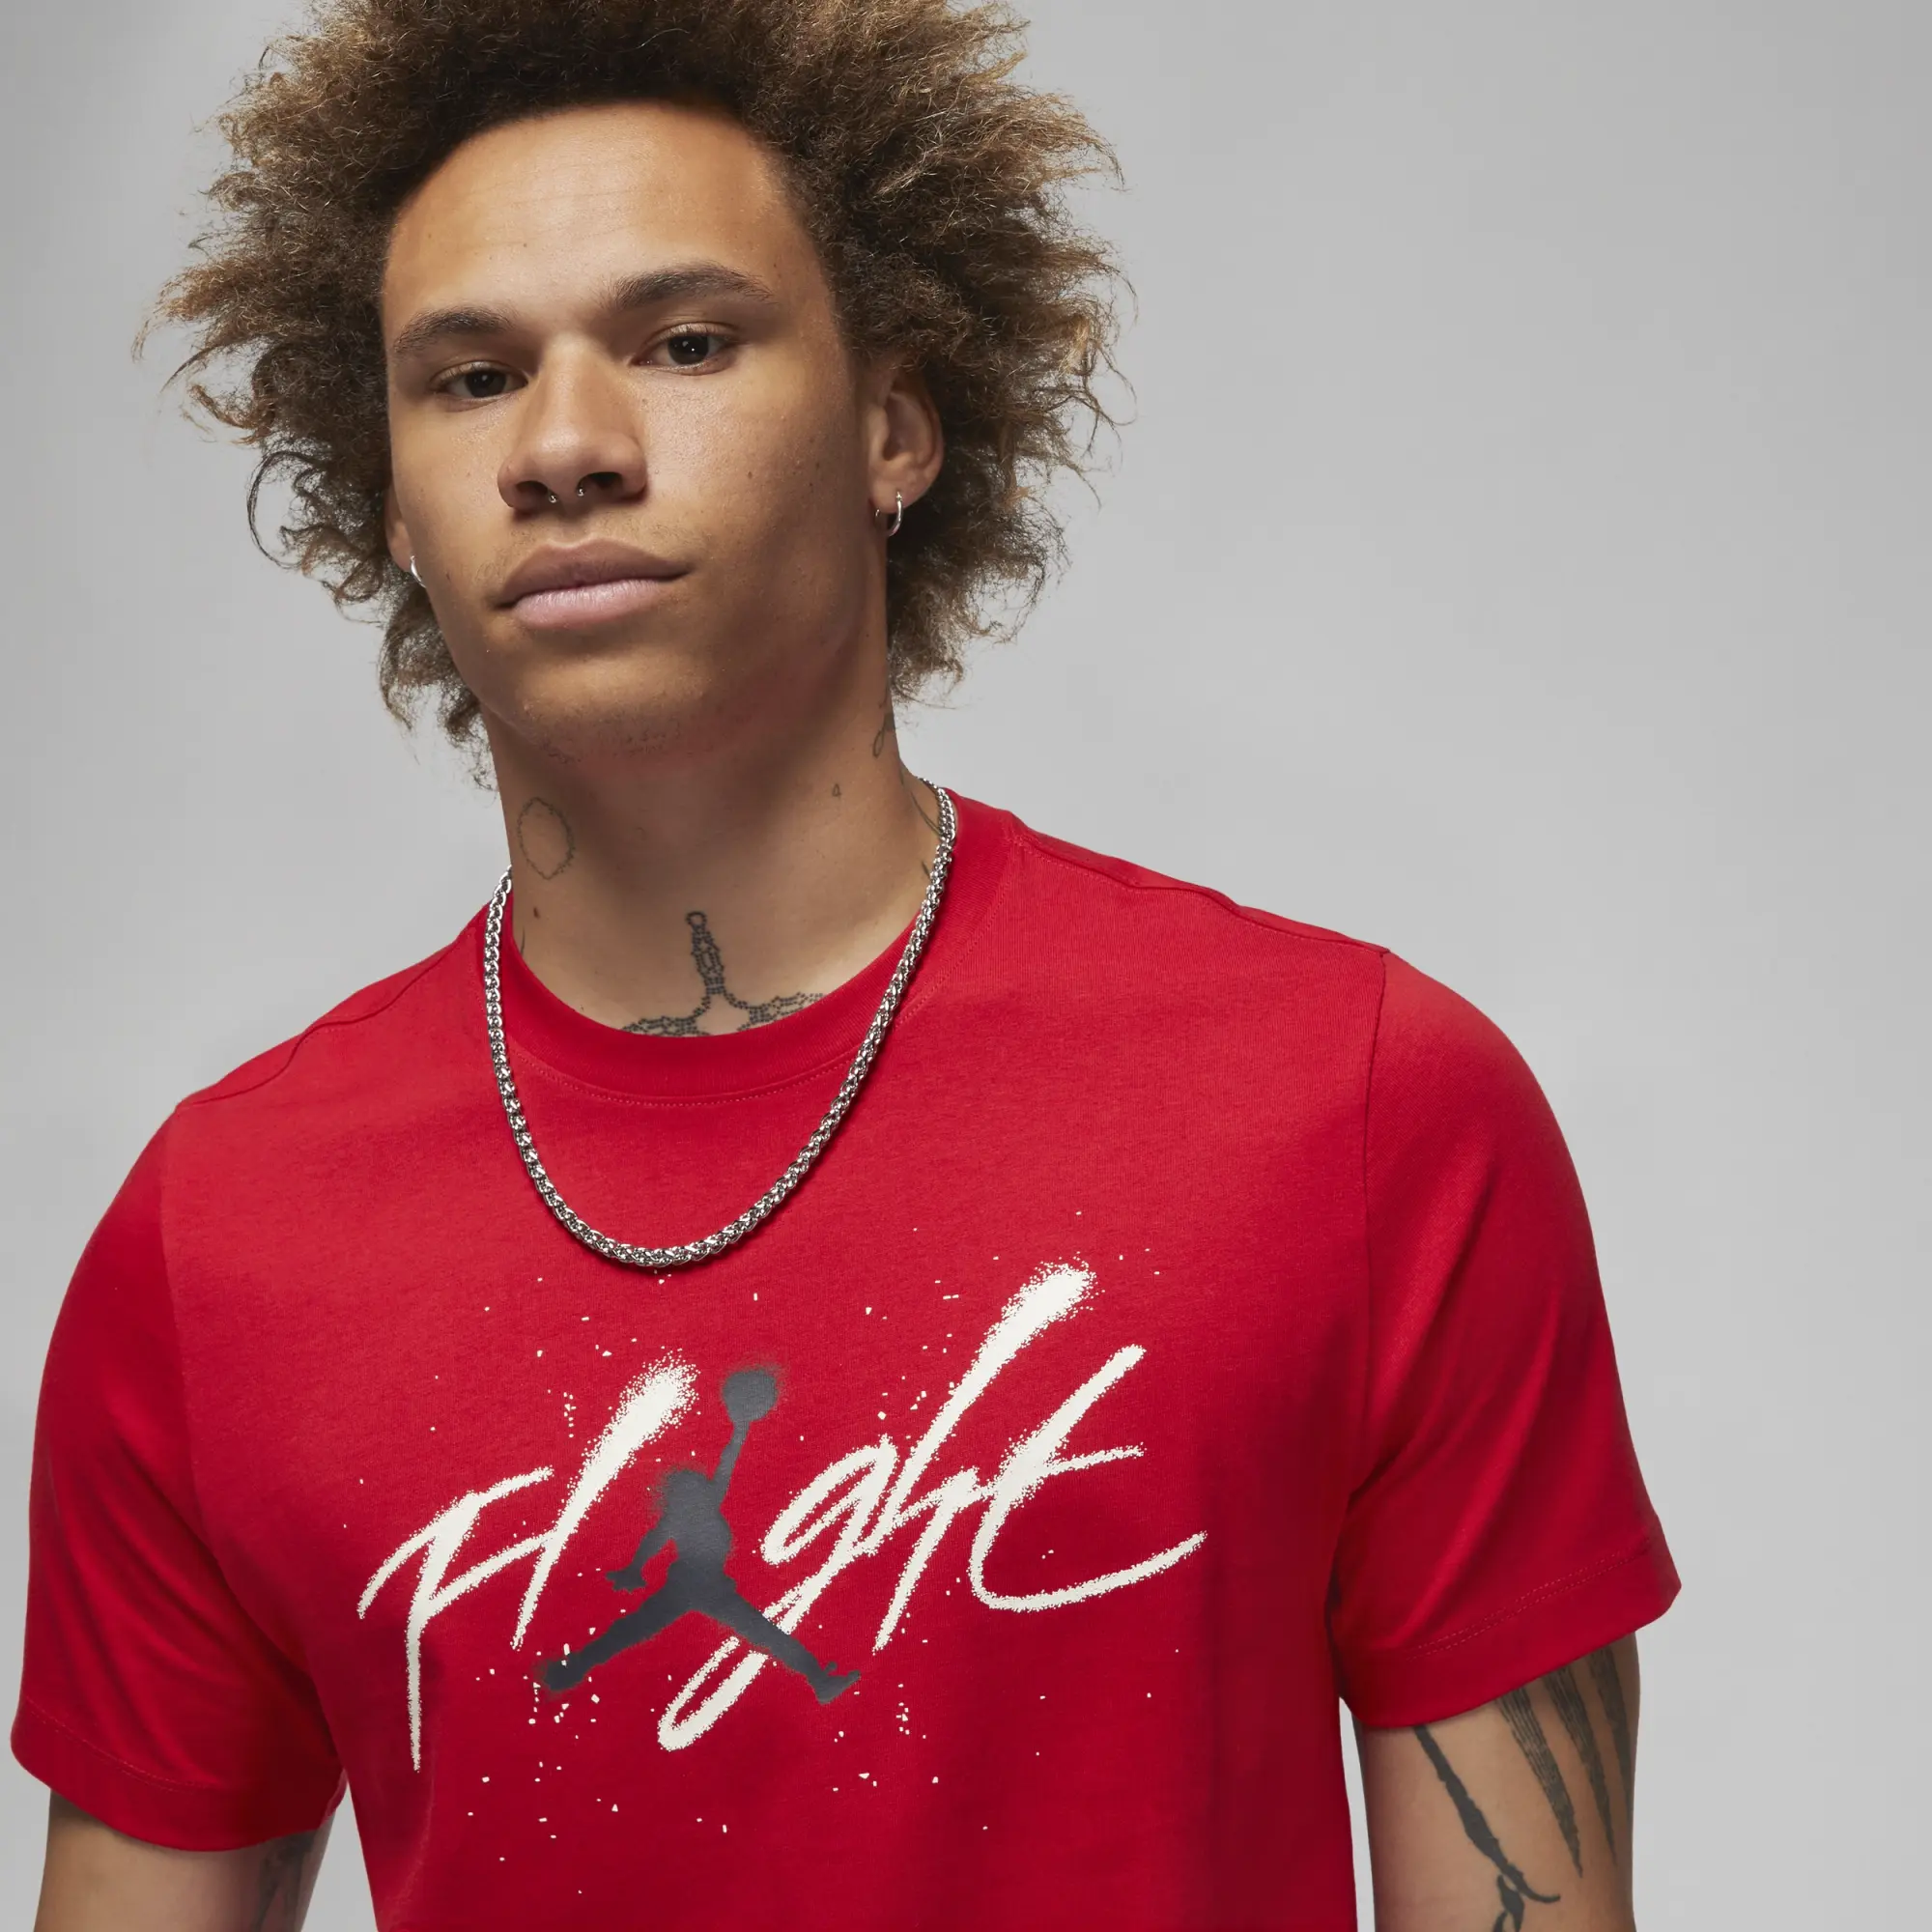 Nike Jordan Men's Graphic T-Shirt - Red | FB7465-687 | FOOTY.COM